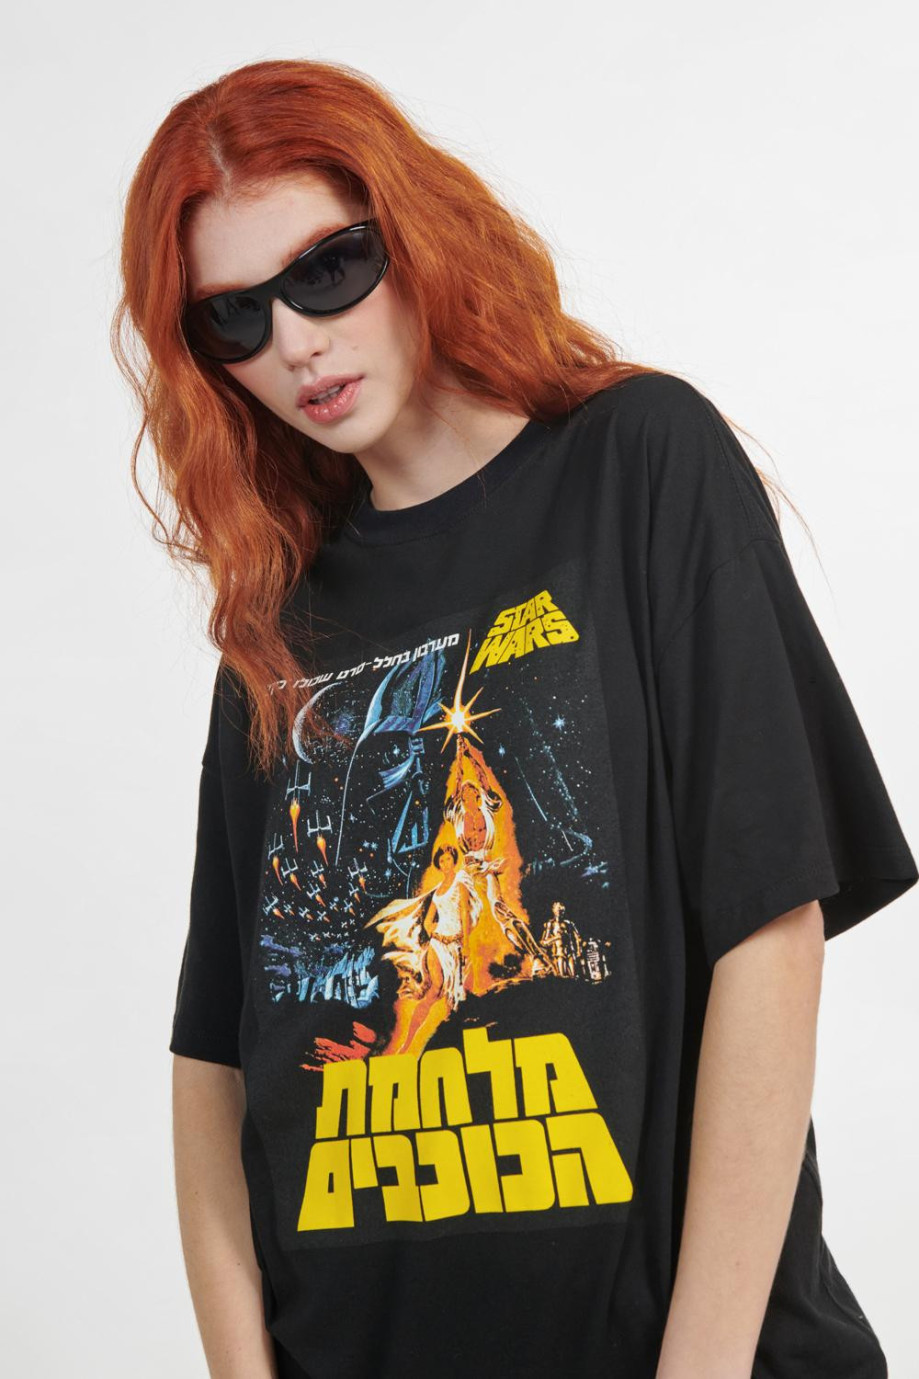 Camiseta negra con manga corta y estampados de Star Wars